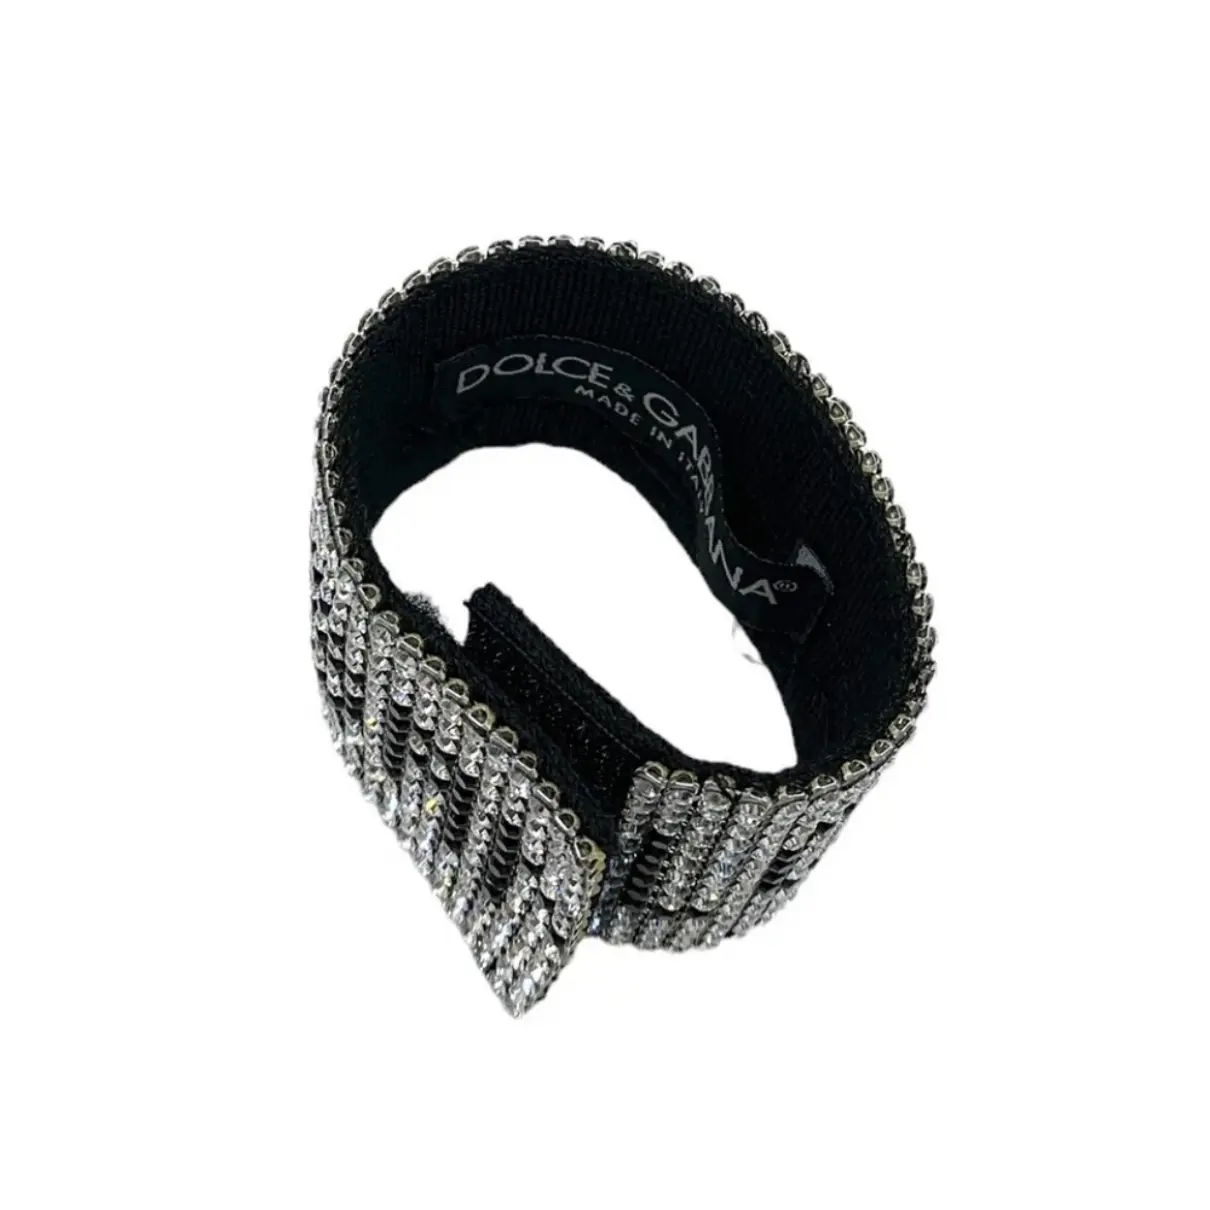 Bracelet Dolce & Gabbana